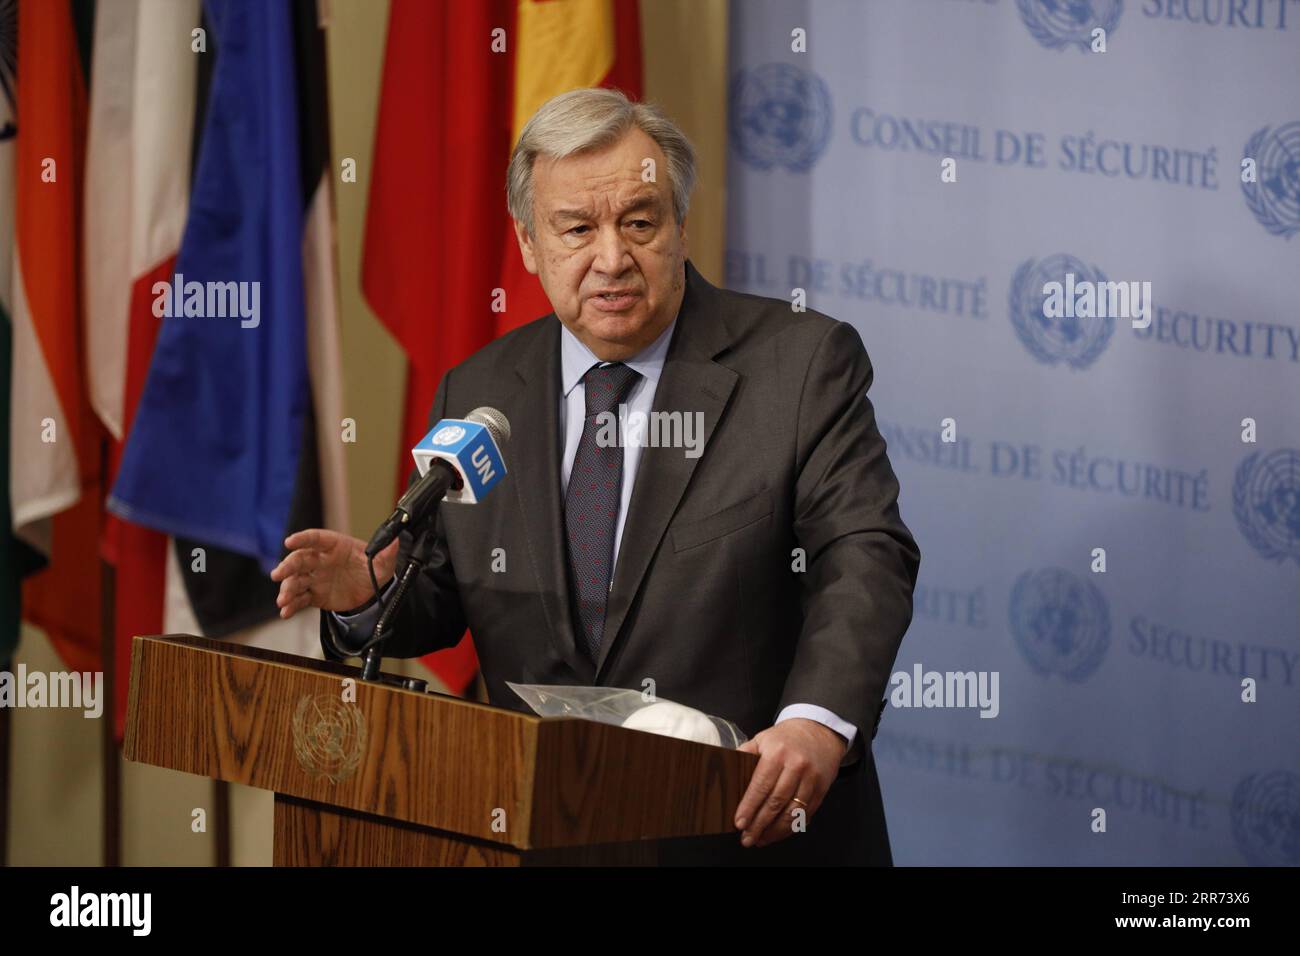 210311 -- NATIONS UNIES, le 11 mars 2021 -- le secrétaire général des Nations Unies Antonio Guterres prend la parole lors d'une rencontre de presse marquant le 10e anniversaire du conflit syrien au siège de l'ONU à New York, le 10 mars 2021. Le Secrétaire général des Nations Unies Antonio Guterres a exhorté mercredi la communauté internationale à continuer d’atteindre tous les Syriens qui ont besoin d’aide humanitaire. ANNIVERSAIRE DU CONFLIT SYRIEN-ONU-ANTONIO GUTERRES XIEXE PUBLICATIONXNOTXINXCHN Banque D'Images